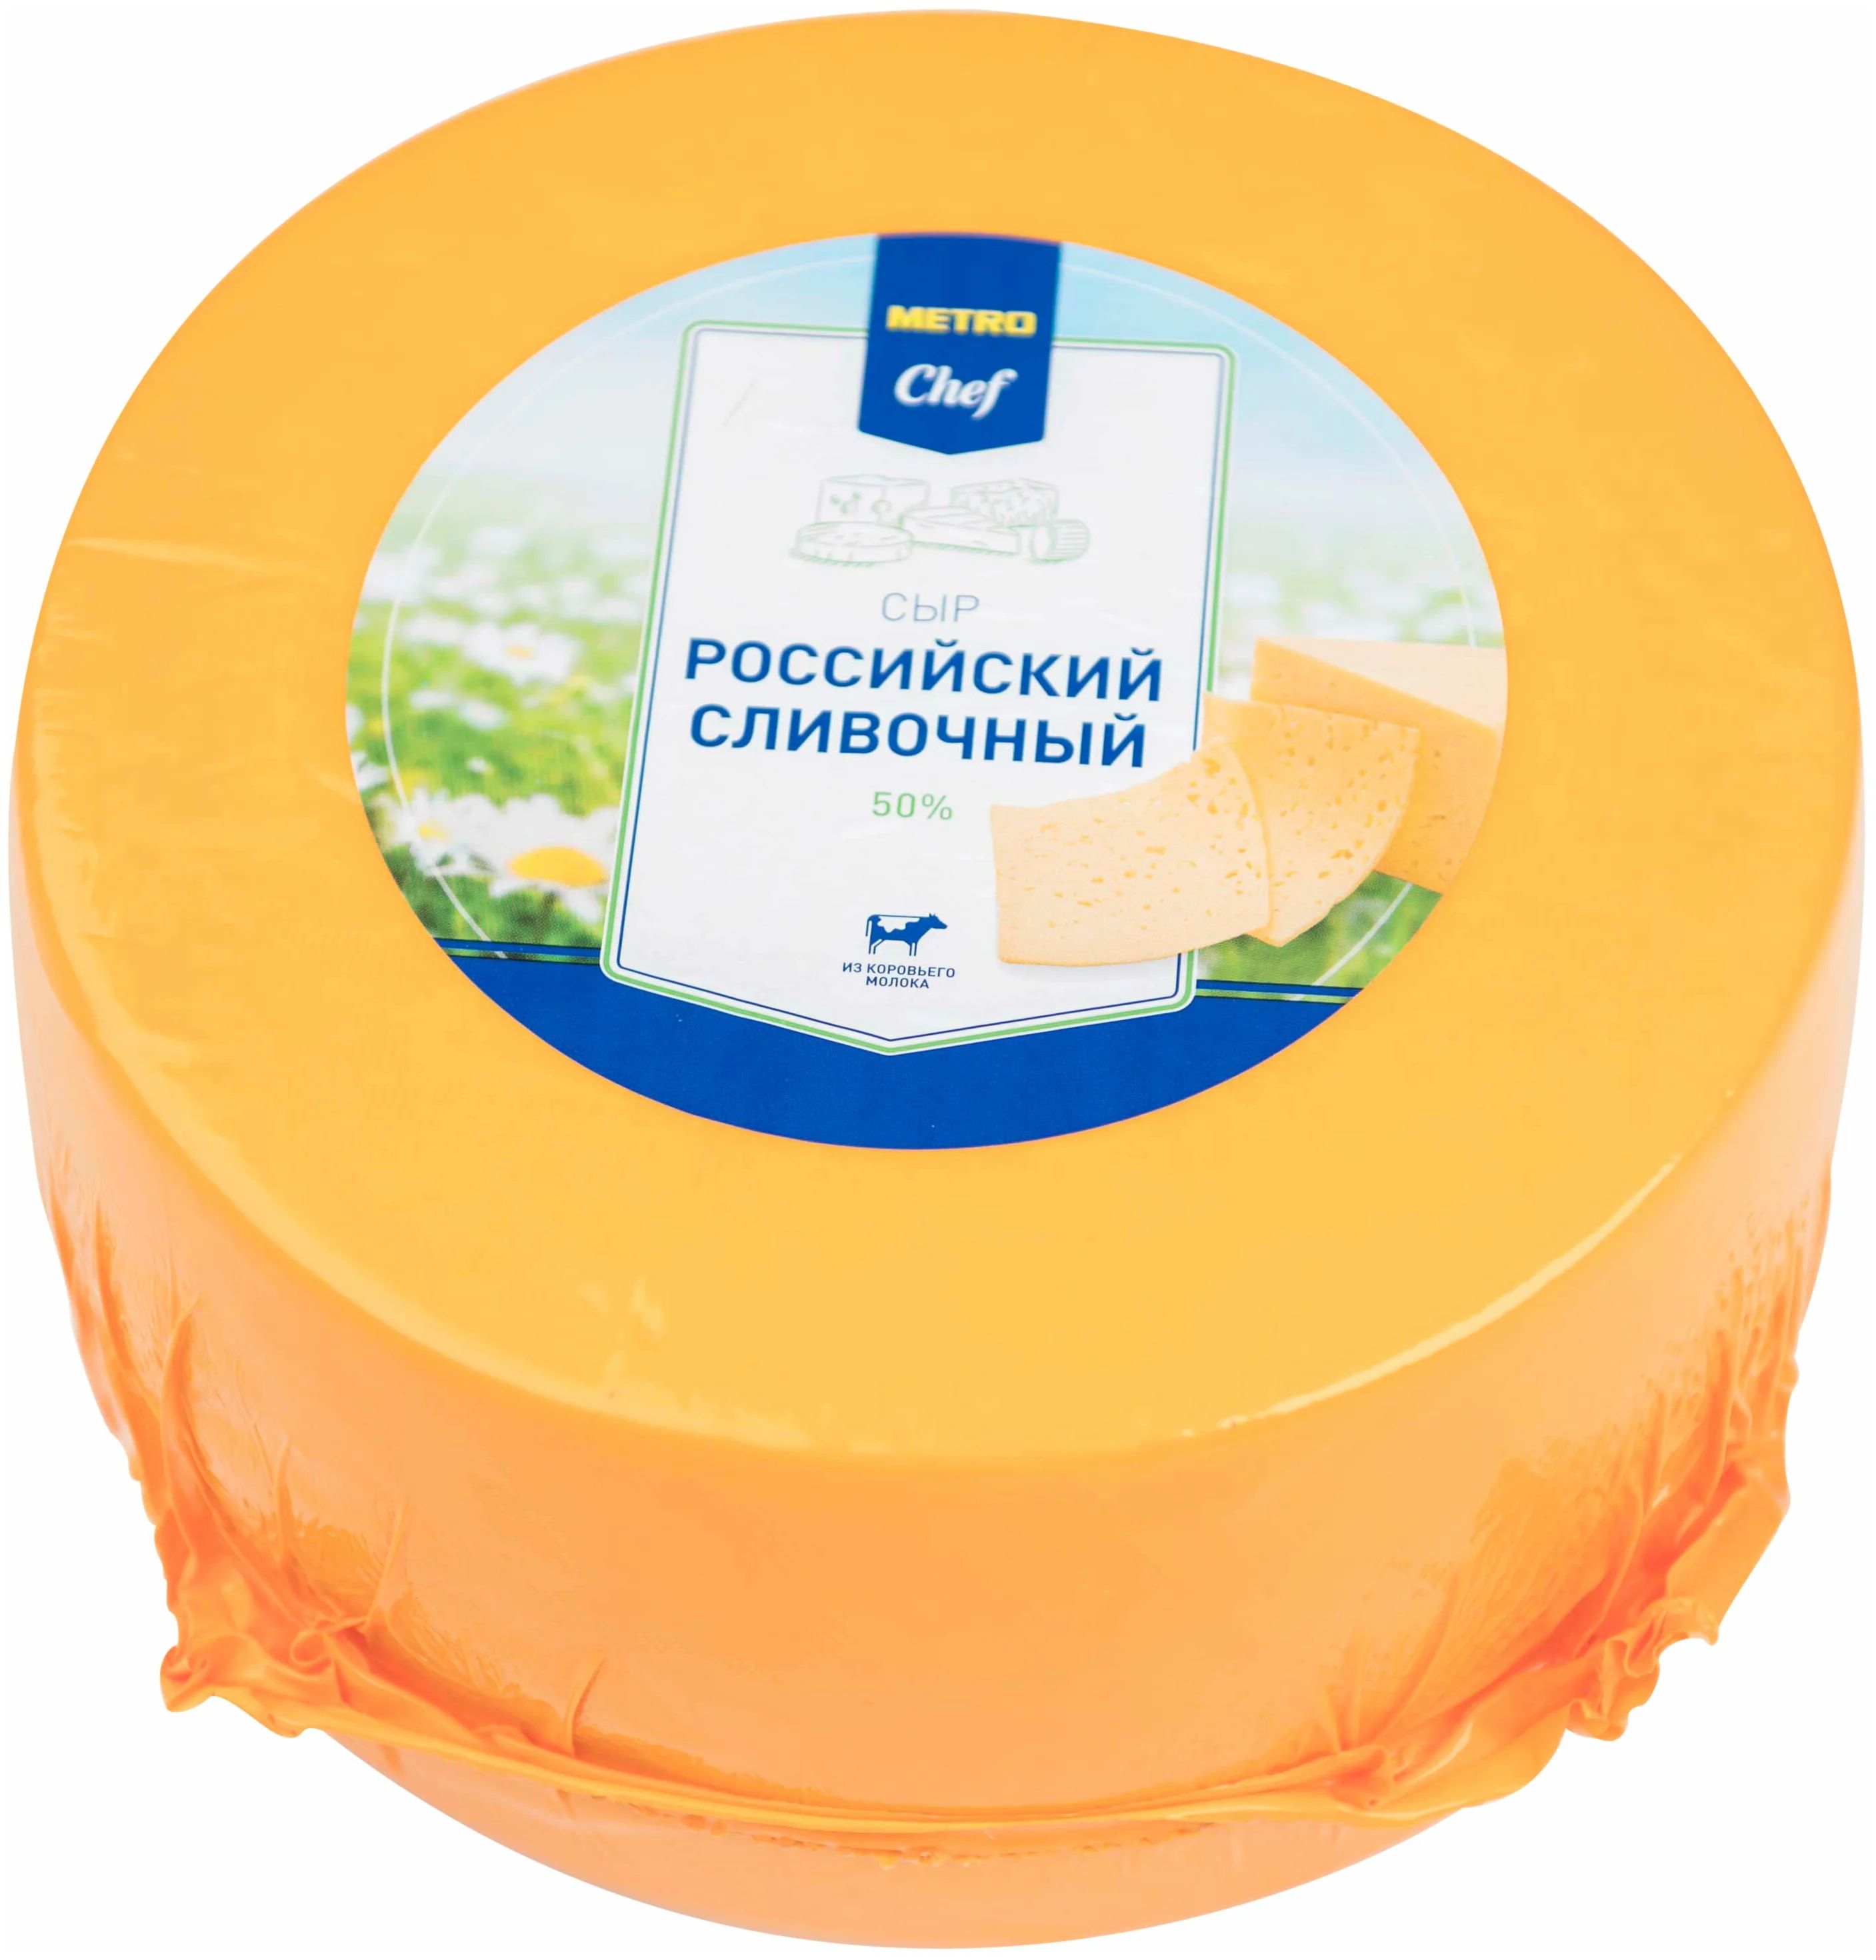 Сыр полутвердый Metro Chef Российский сливочный нарезка 50% 150 г